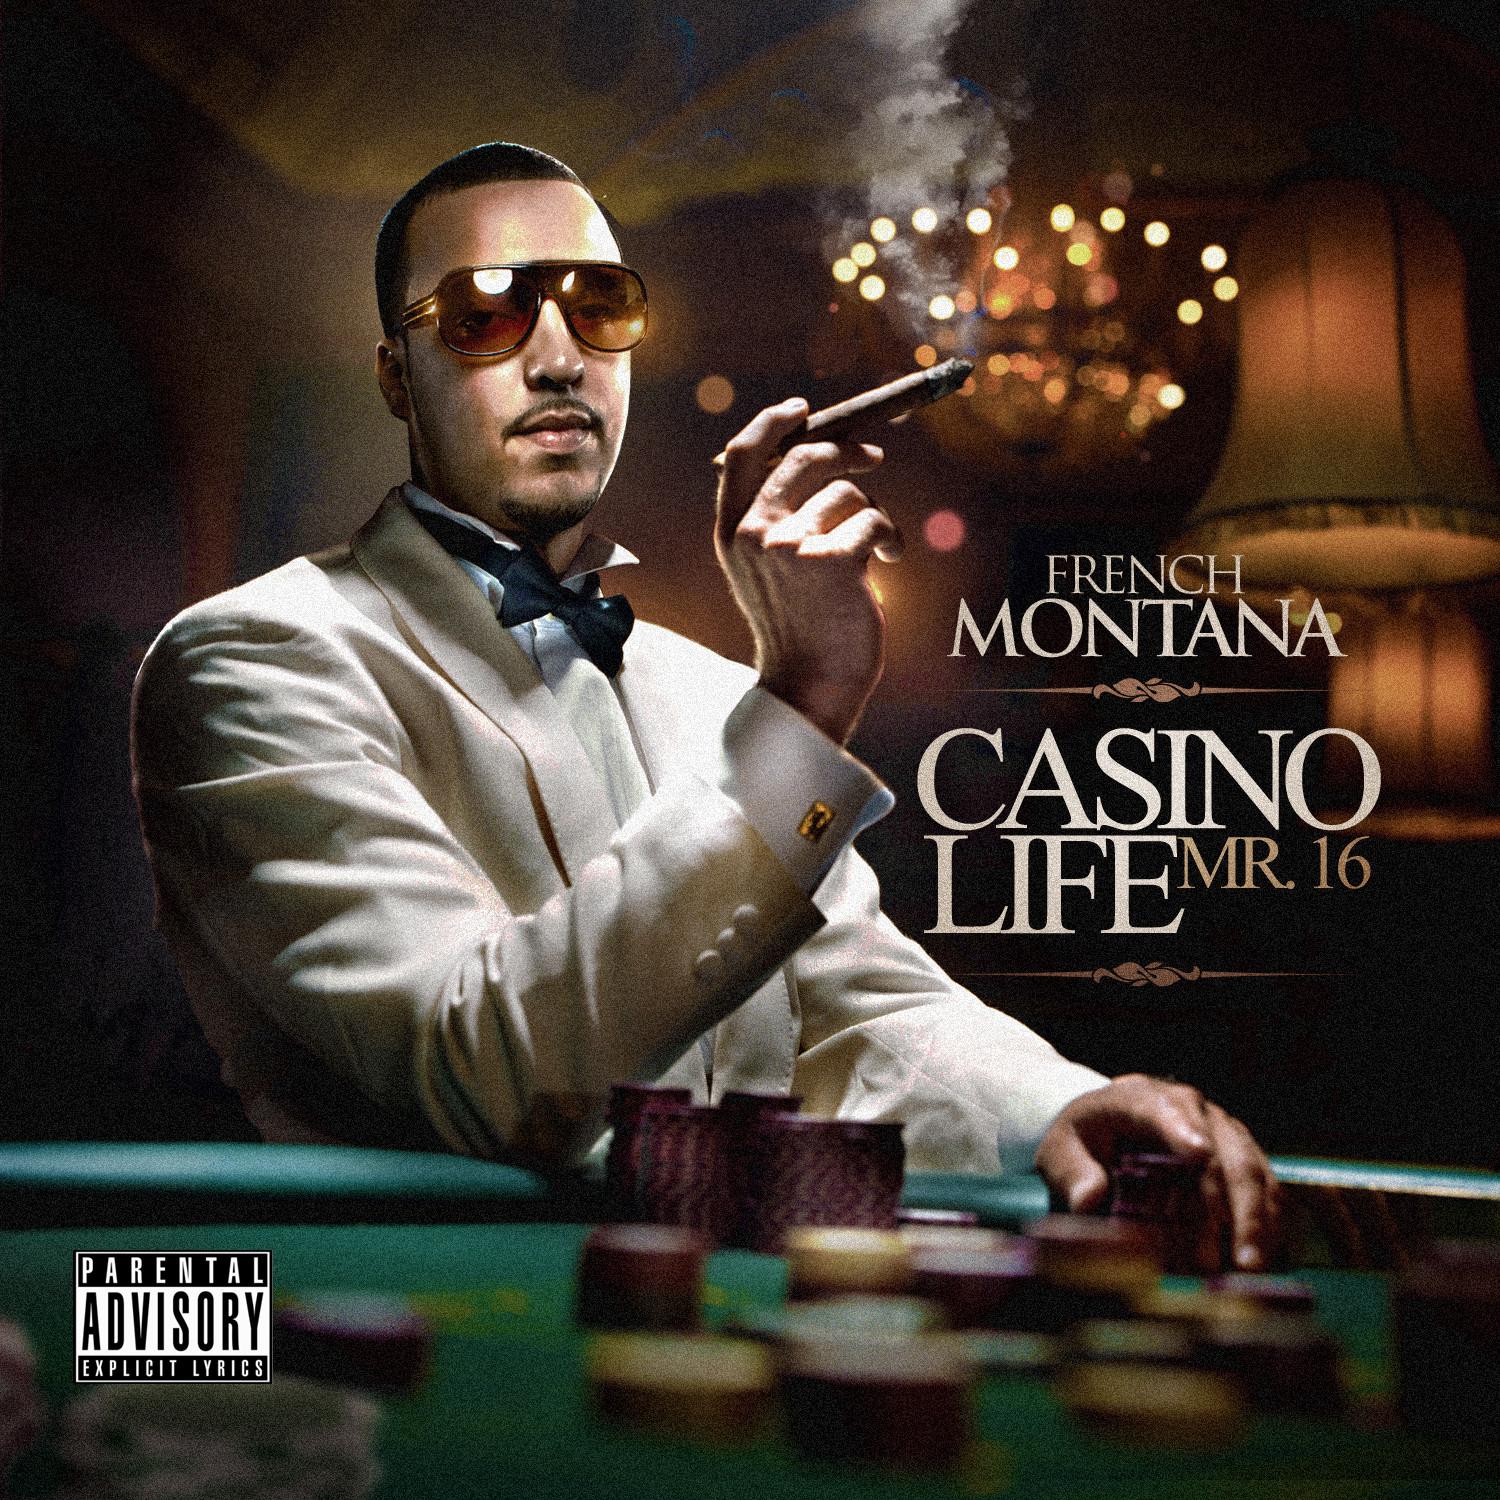 Casino Life - Intro